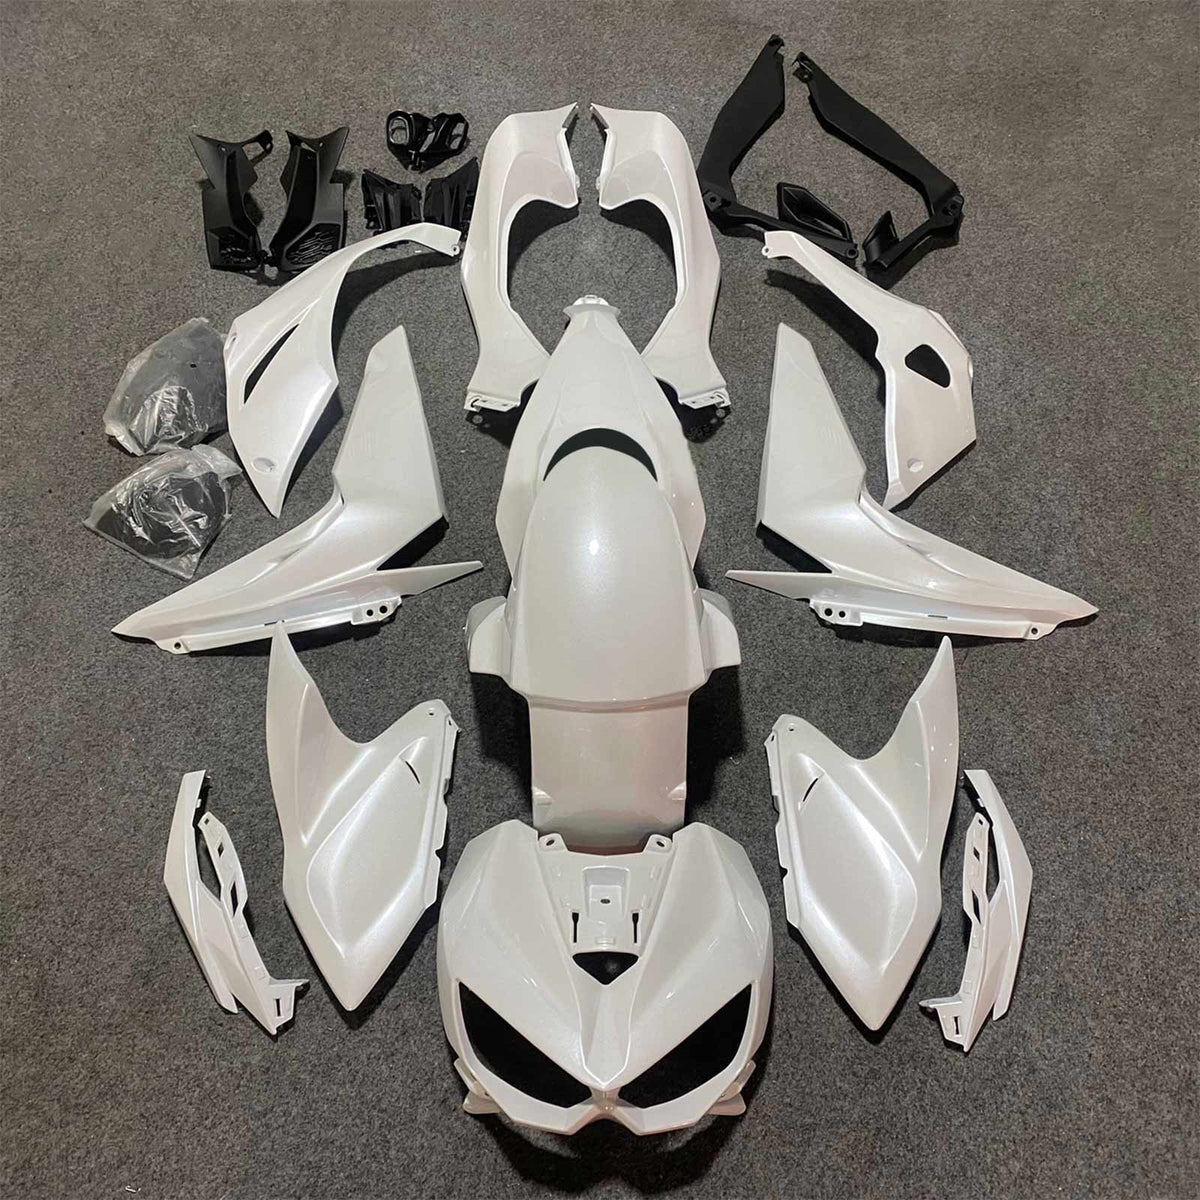 Amotopart 2014-2017 Z1000 Kawasaki Pearl White Fairing Kit